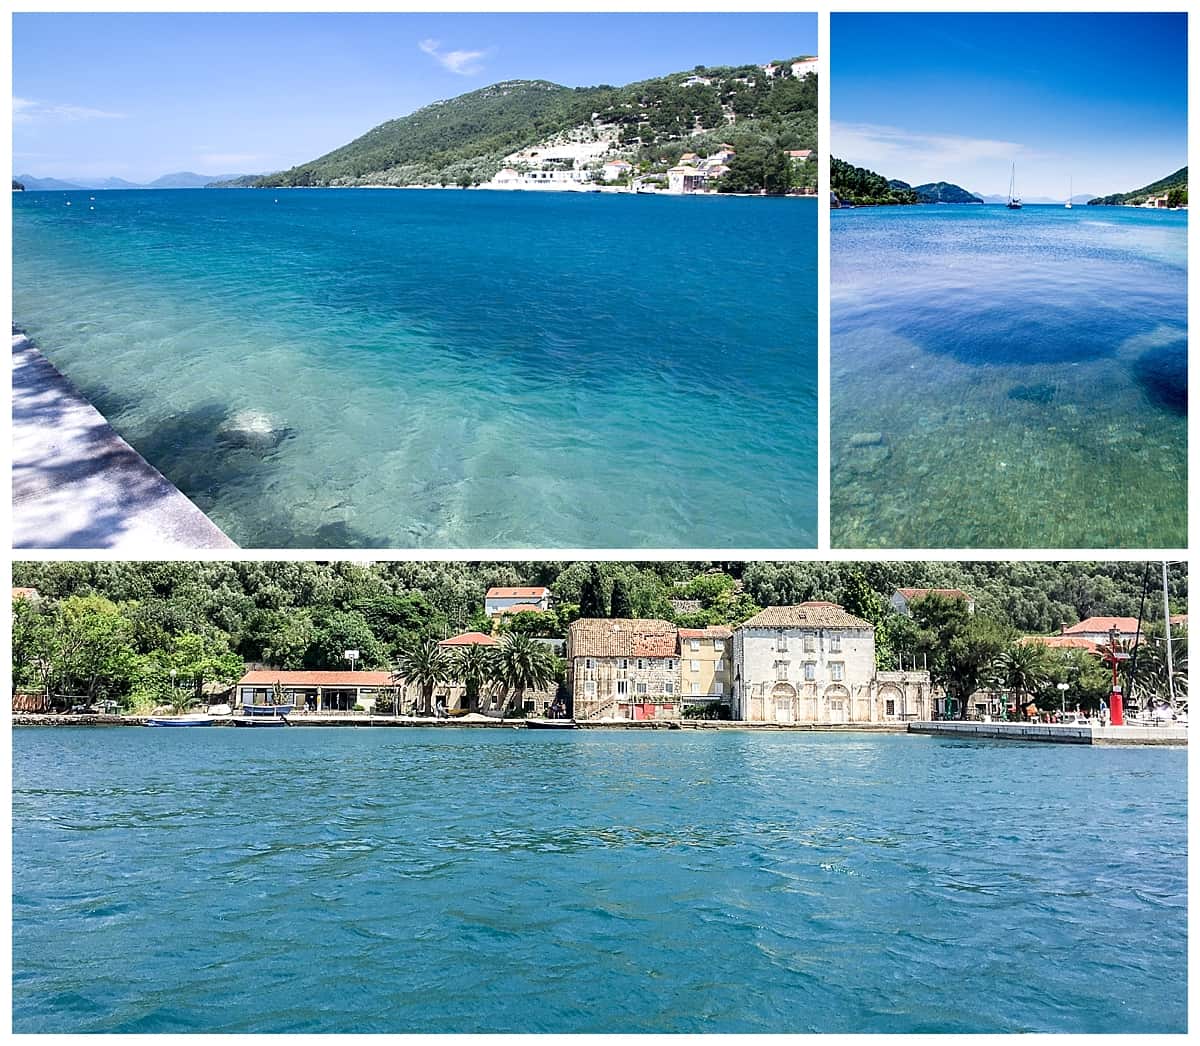 Croatia - collage of islands on Dalmatian Coast